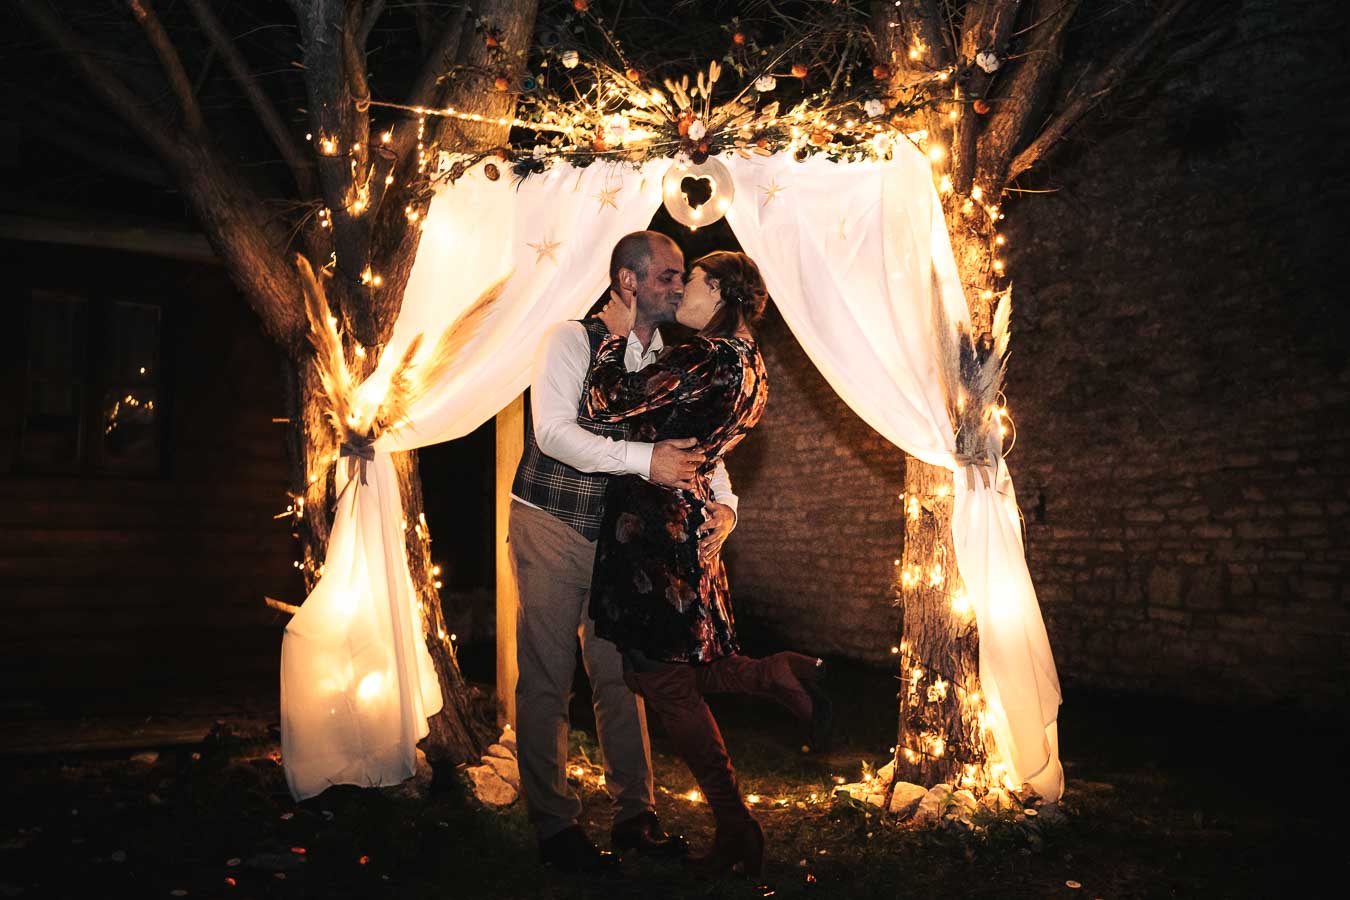 couple s'embrasse sous une arche lumineuse, scene nocturne